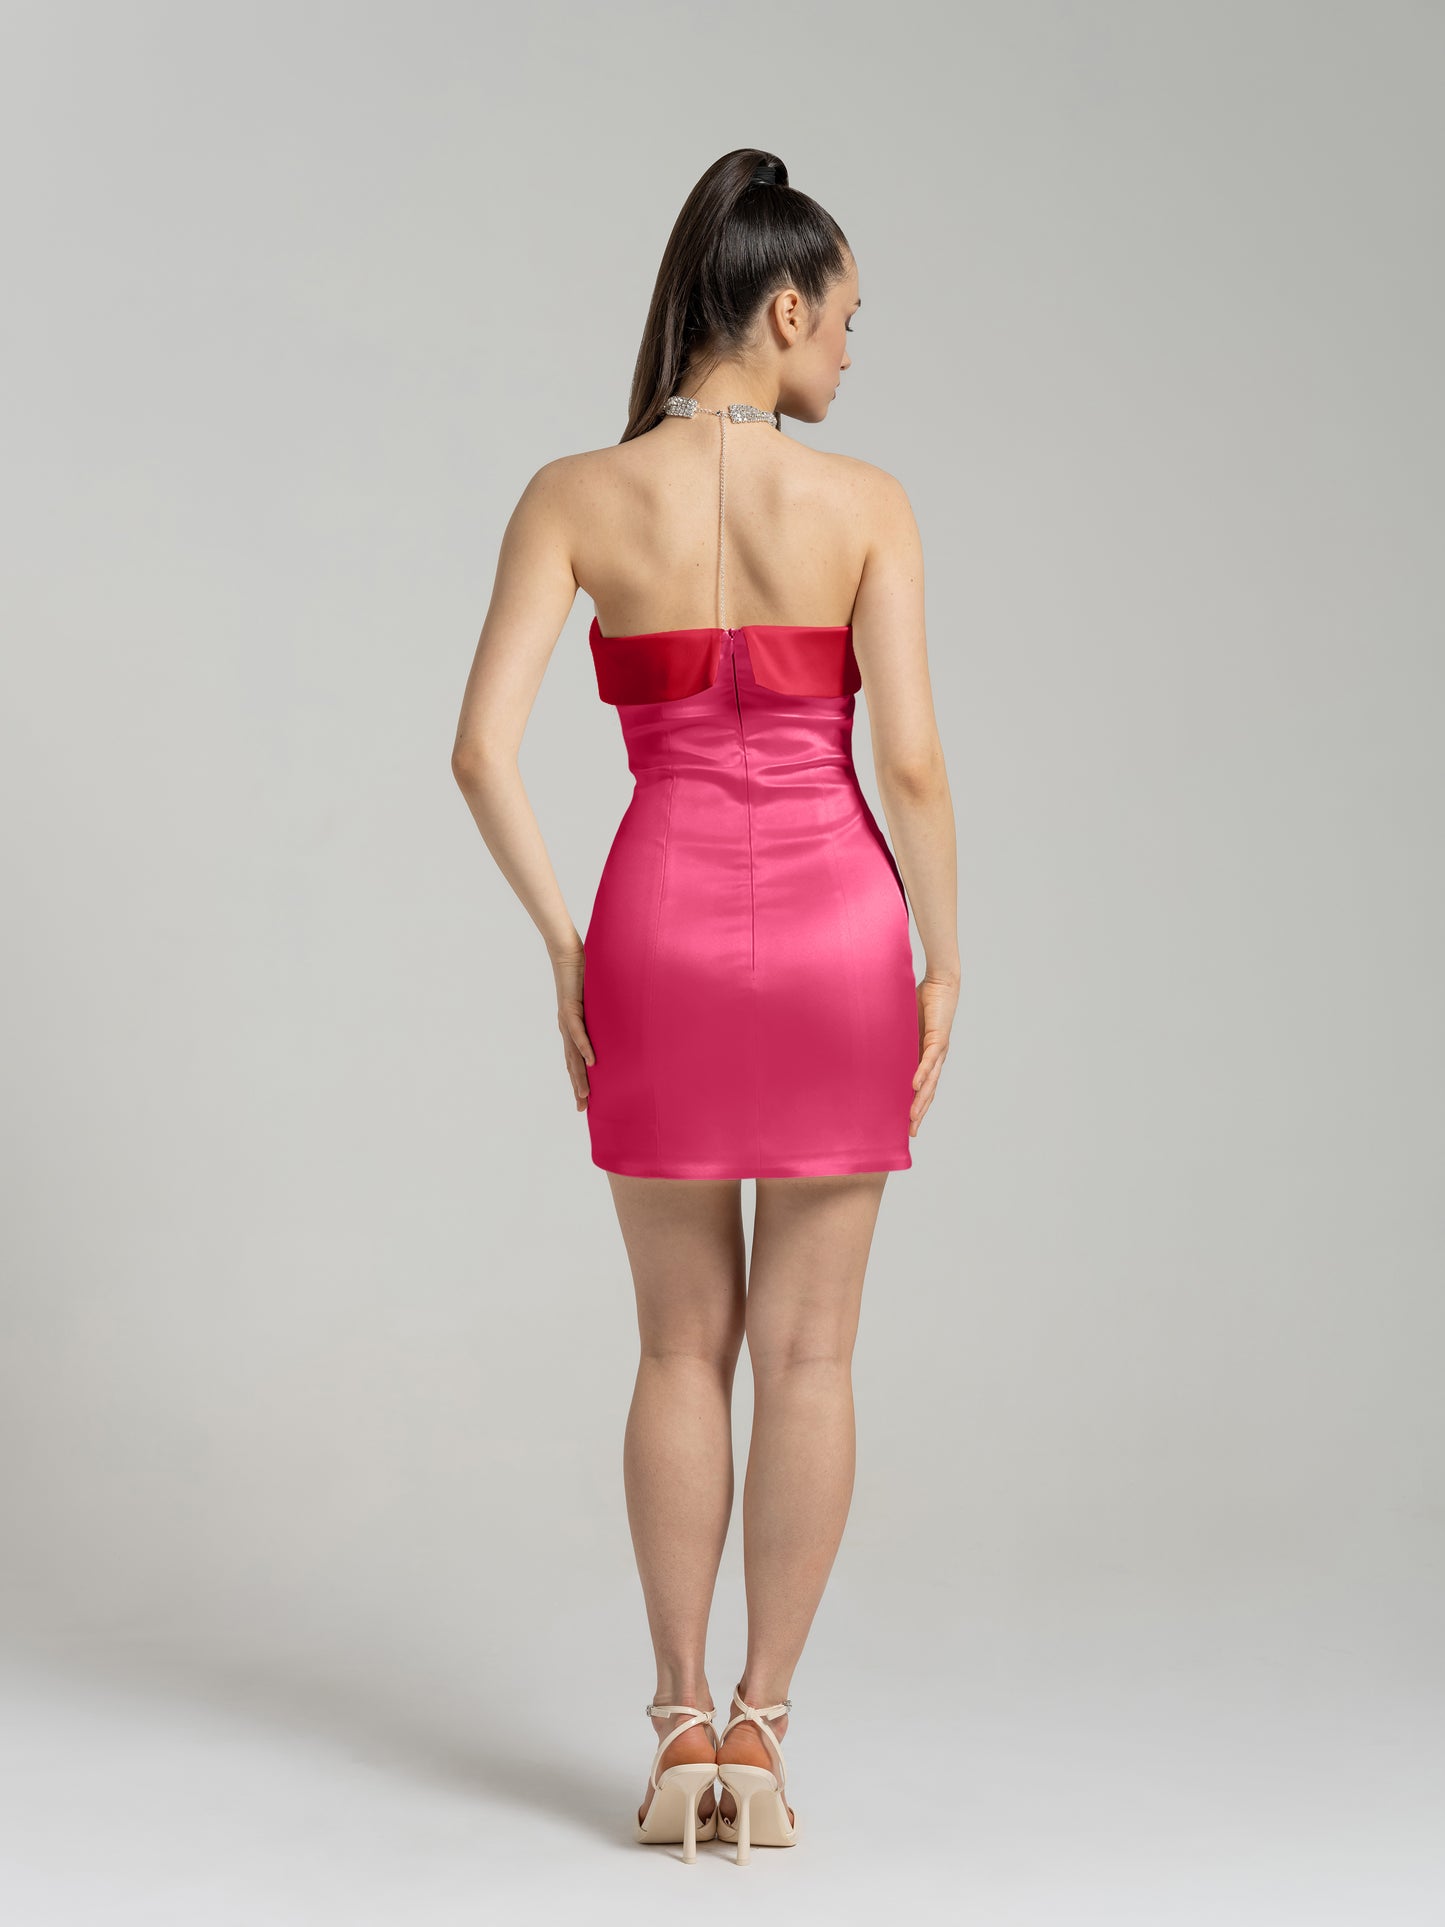 Romantic Allure Satin Mini Dress - Pink & Red